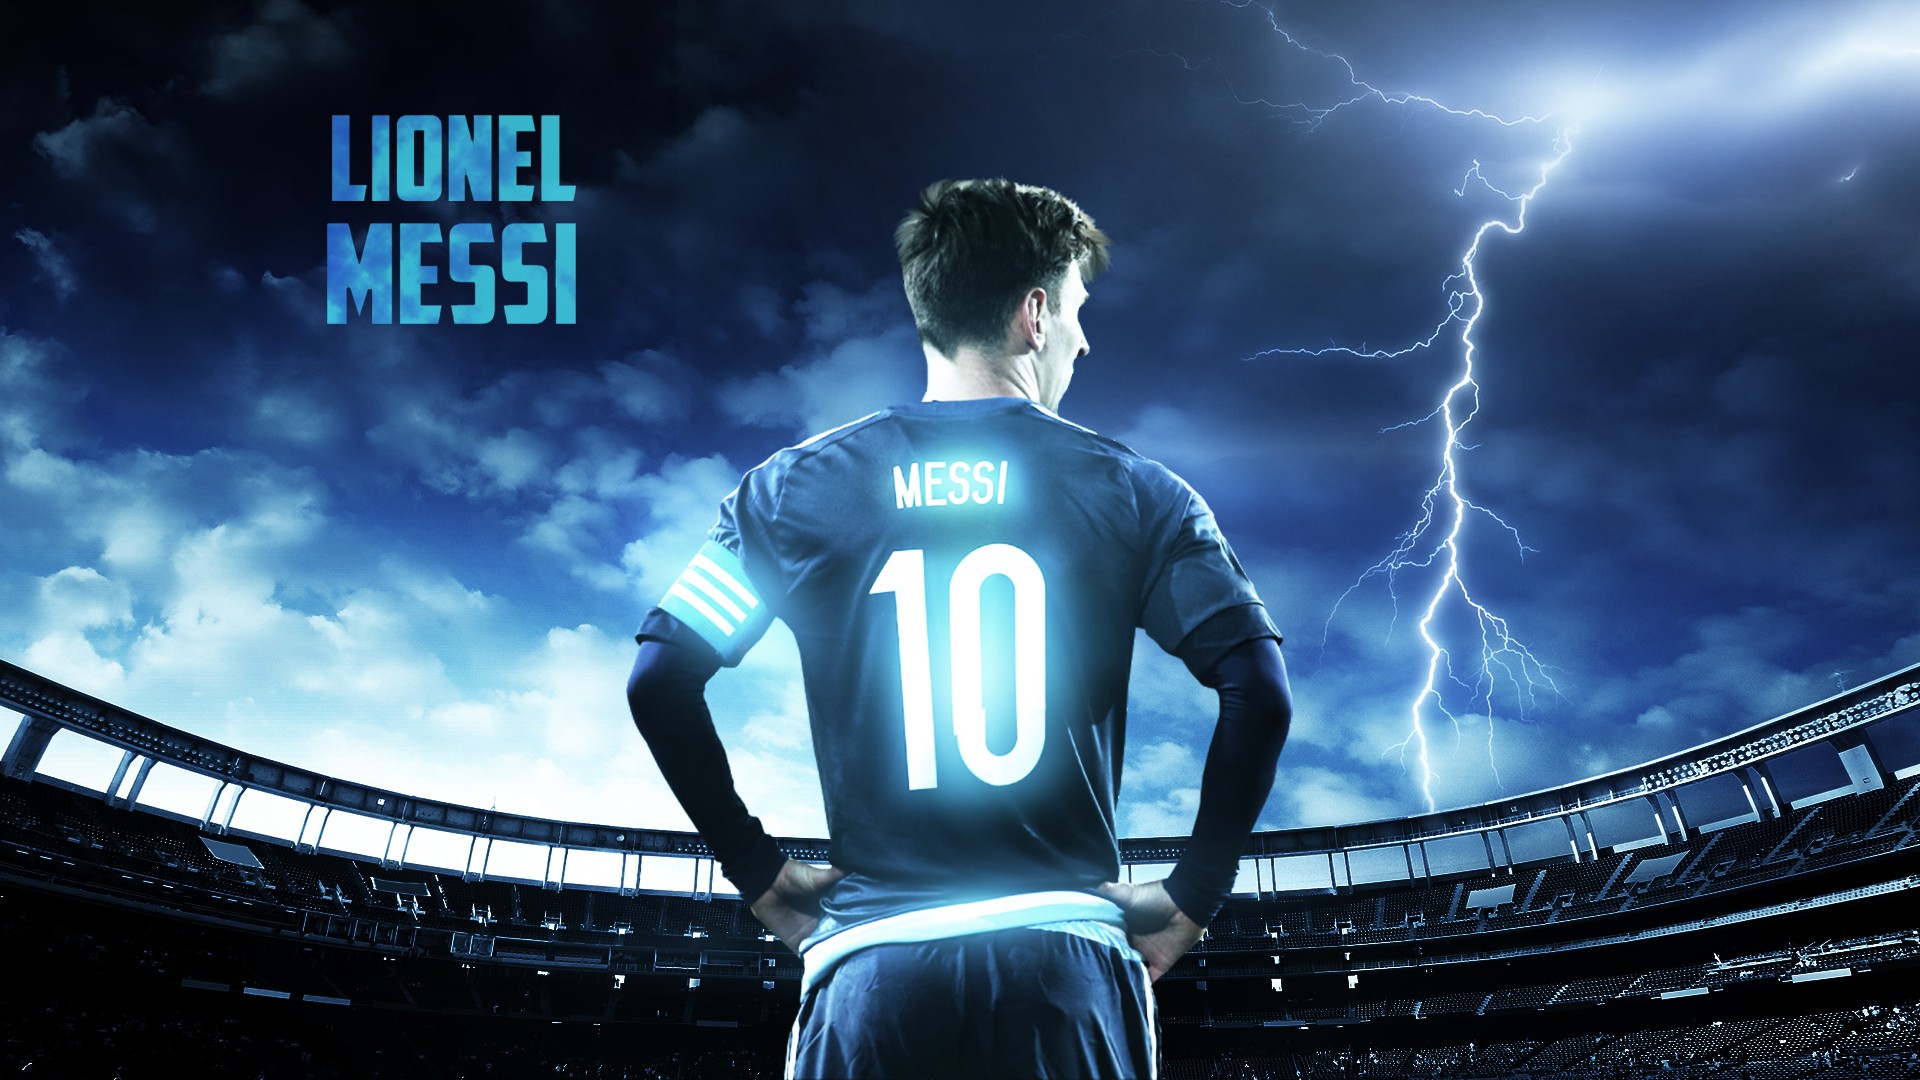 7 căn cứ để tin Messi và đồng đội sẽ vô địch World Cup 2018 - Ảnh 1.